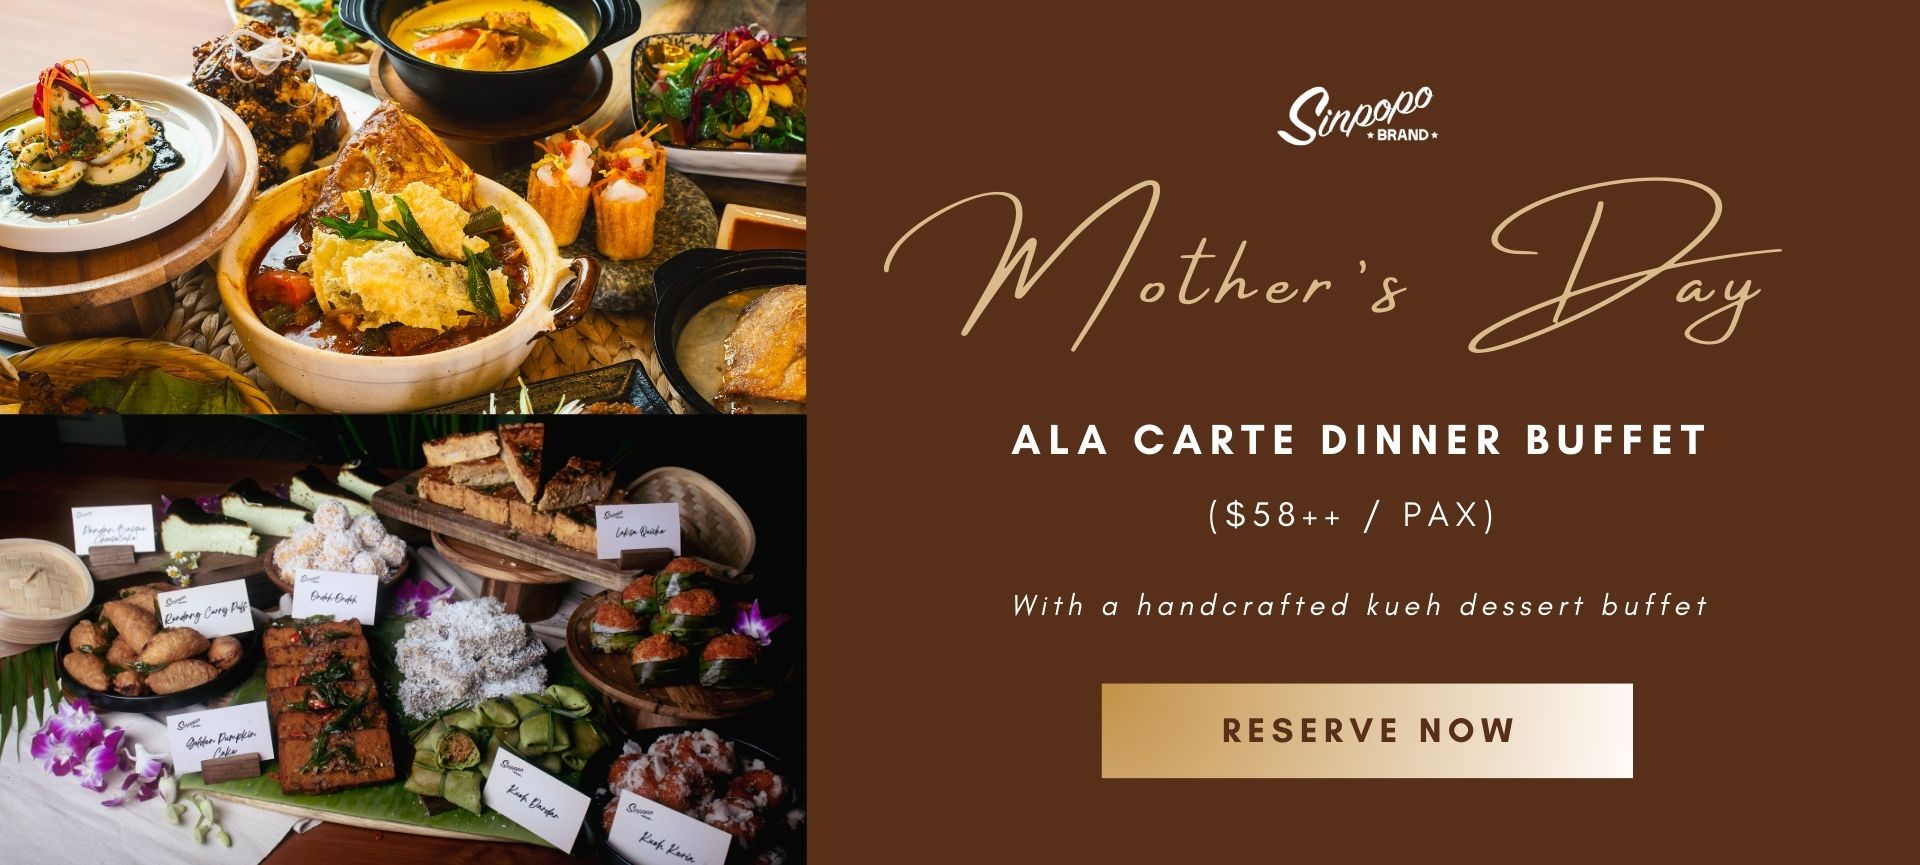 MD-Ala-Carte-Dinner-Buffet